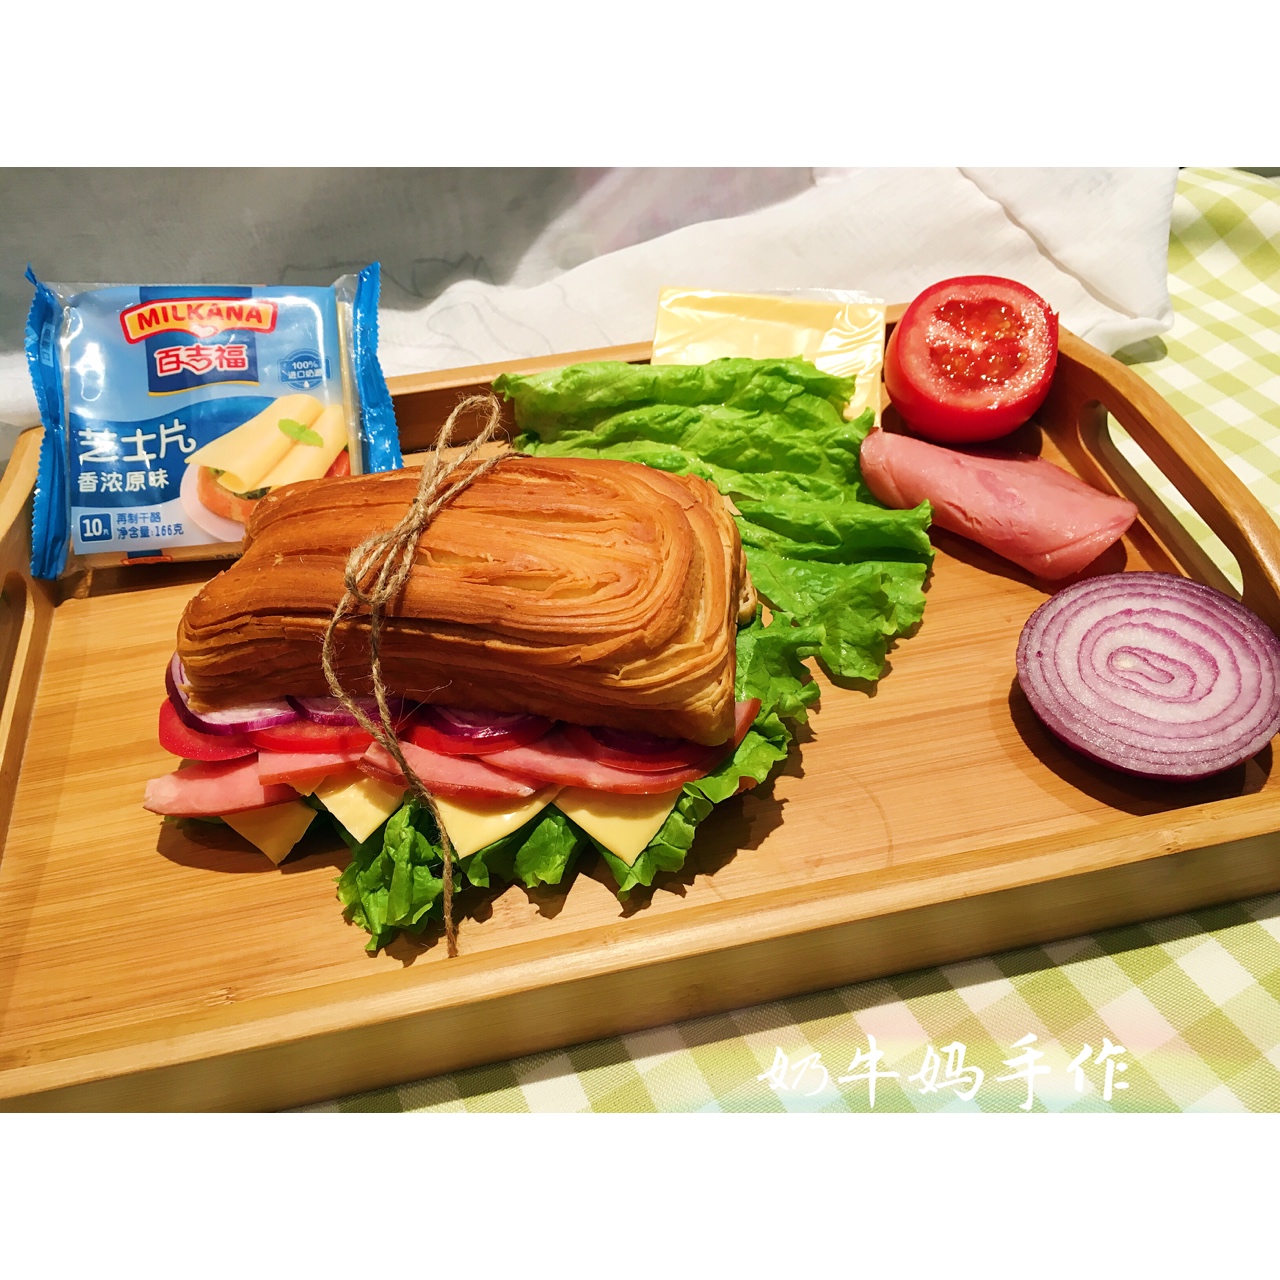 面包“芝心”的拥抱——法式芝心三明治&美式超满足芝心汉堡